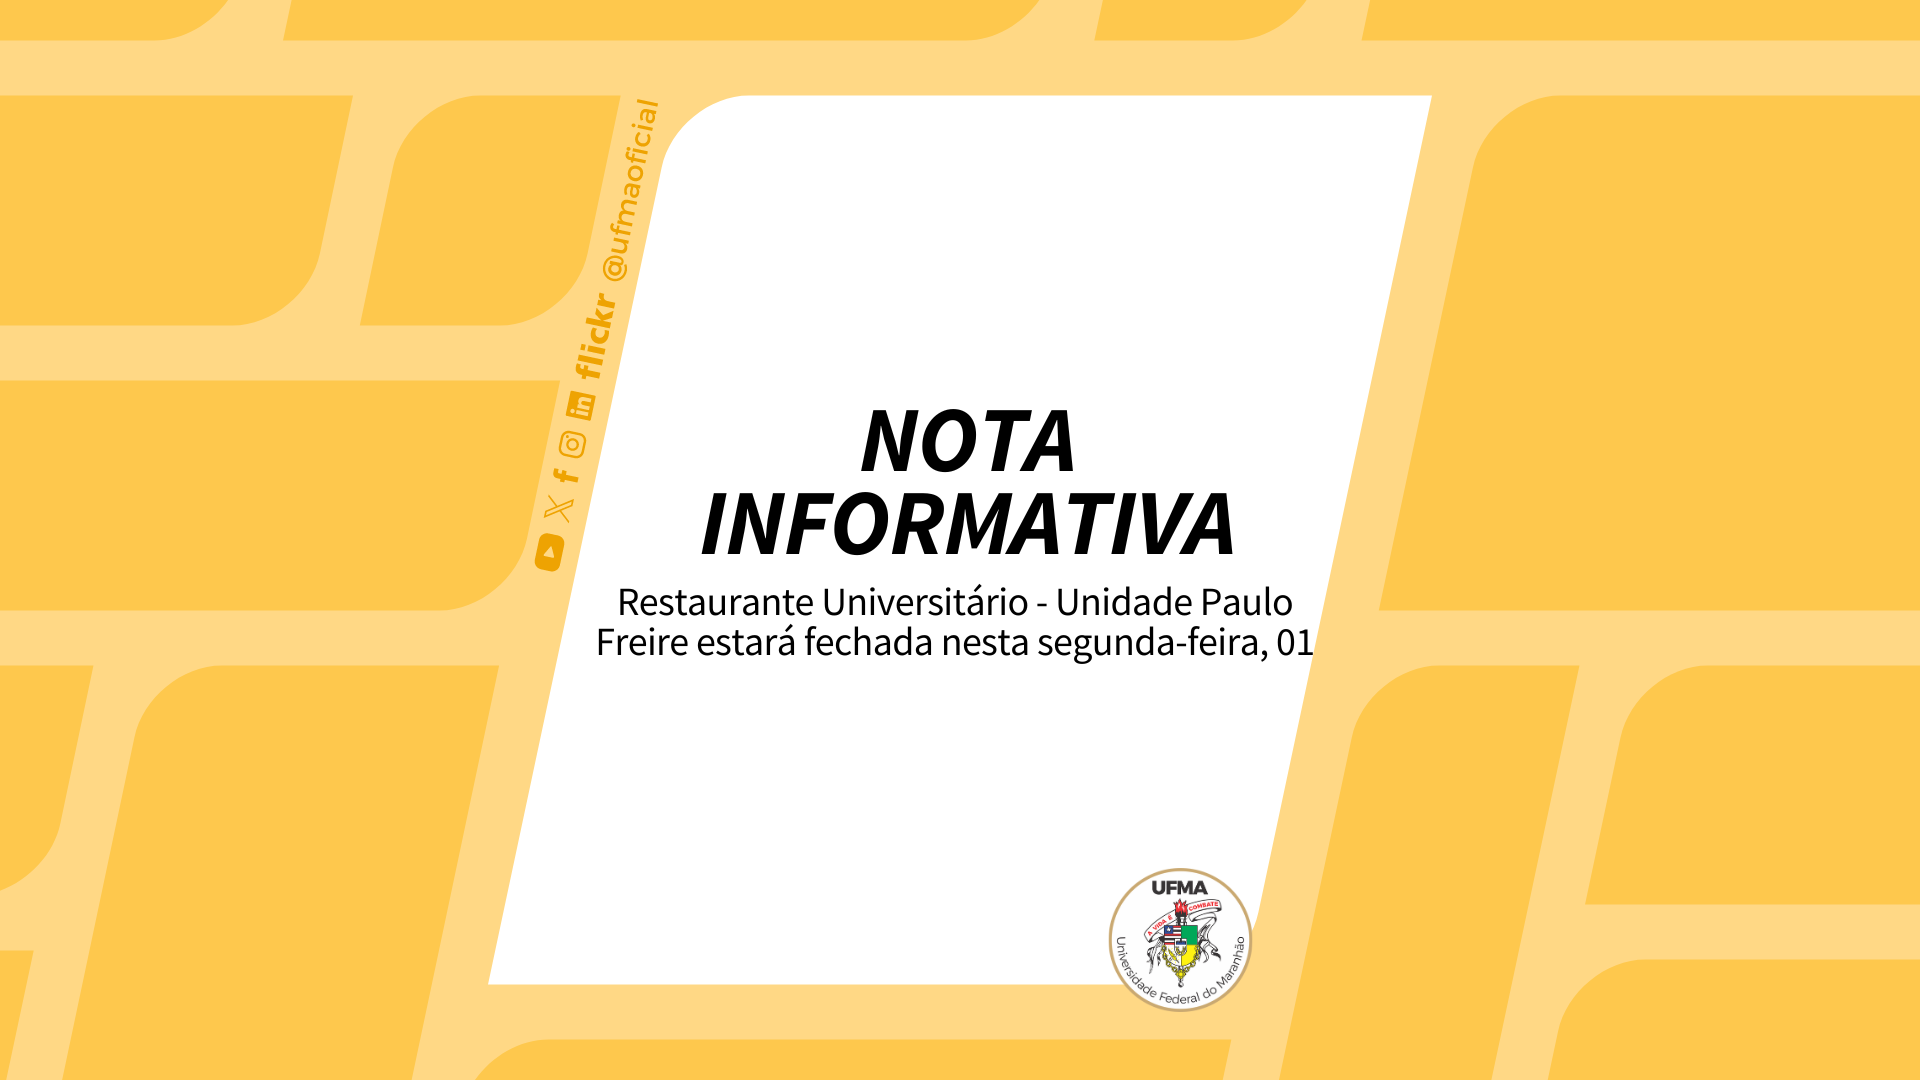 UFMA informa que Unidade Paulo Freire do Restaurante Universitário estará fechada para manutenção nesta segunda-feira, 01